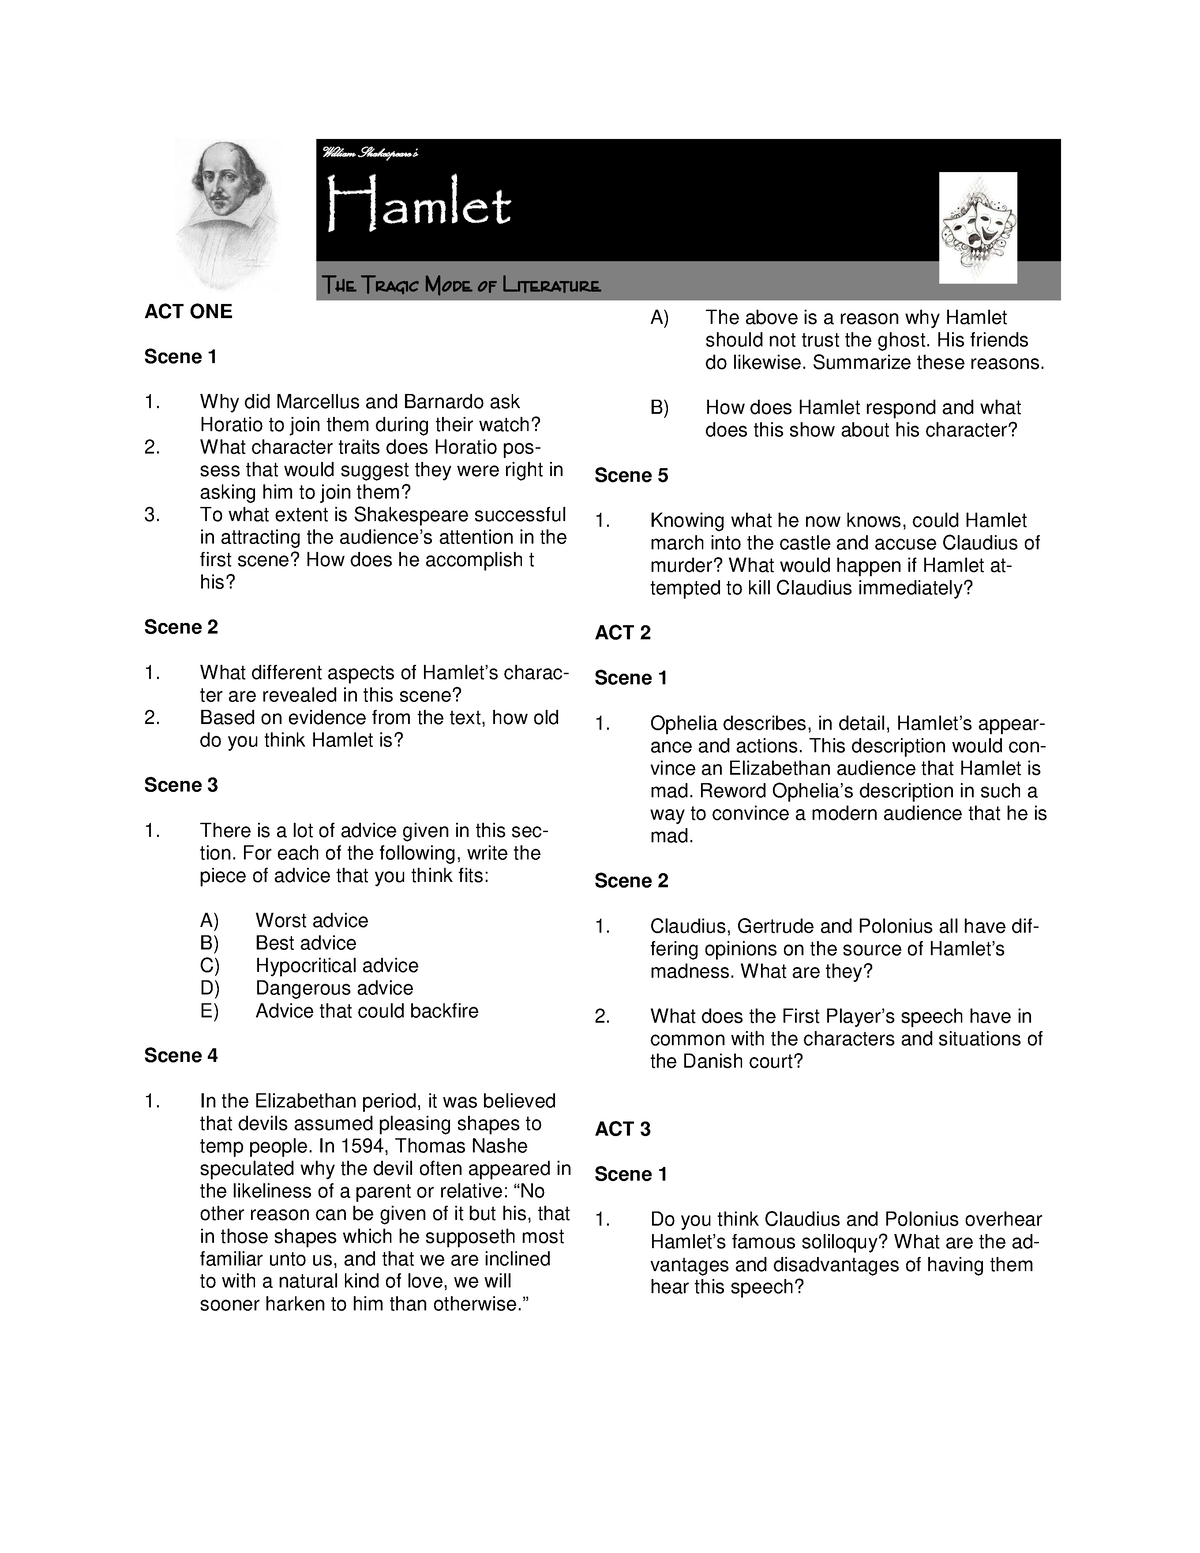 hamlet essay type questions